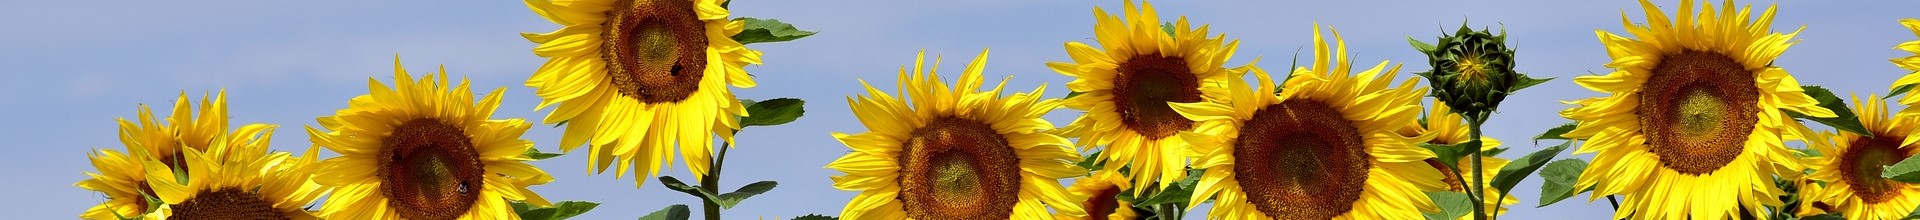 Sonnenblumen_schmal